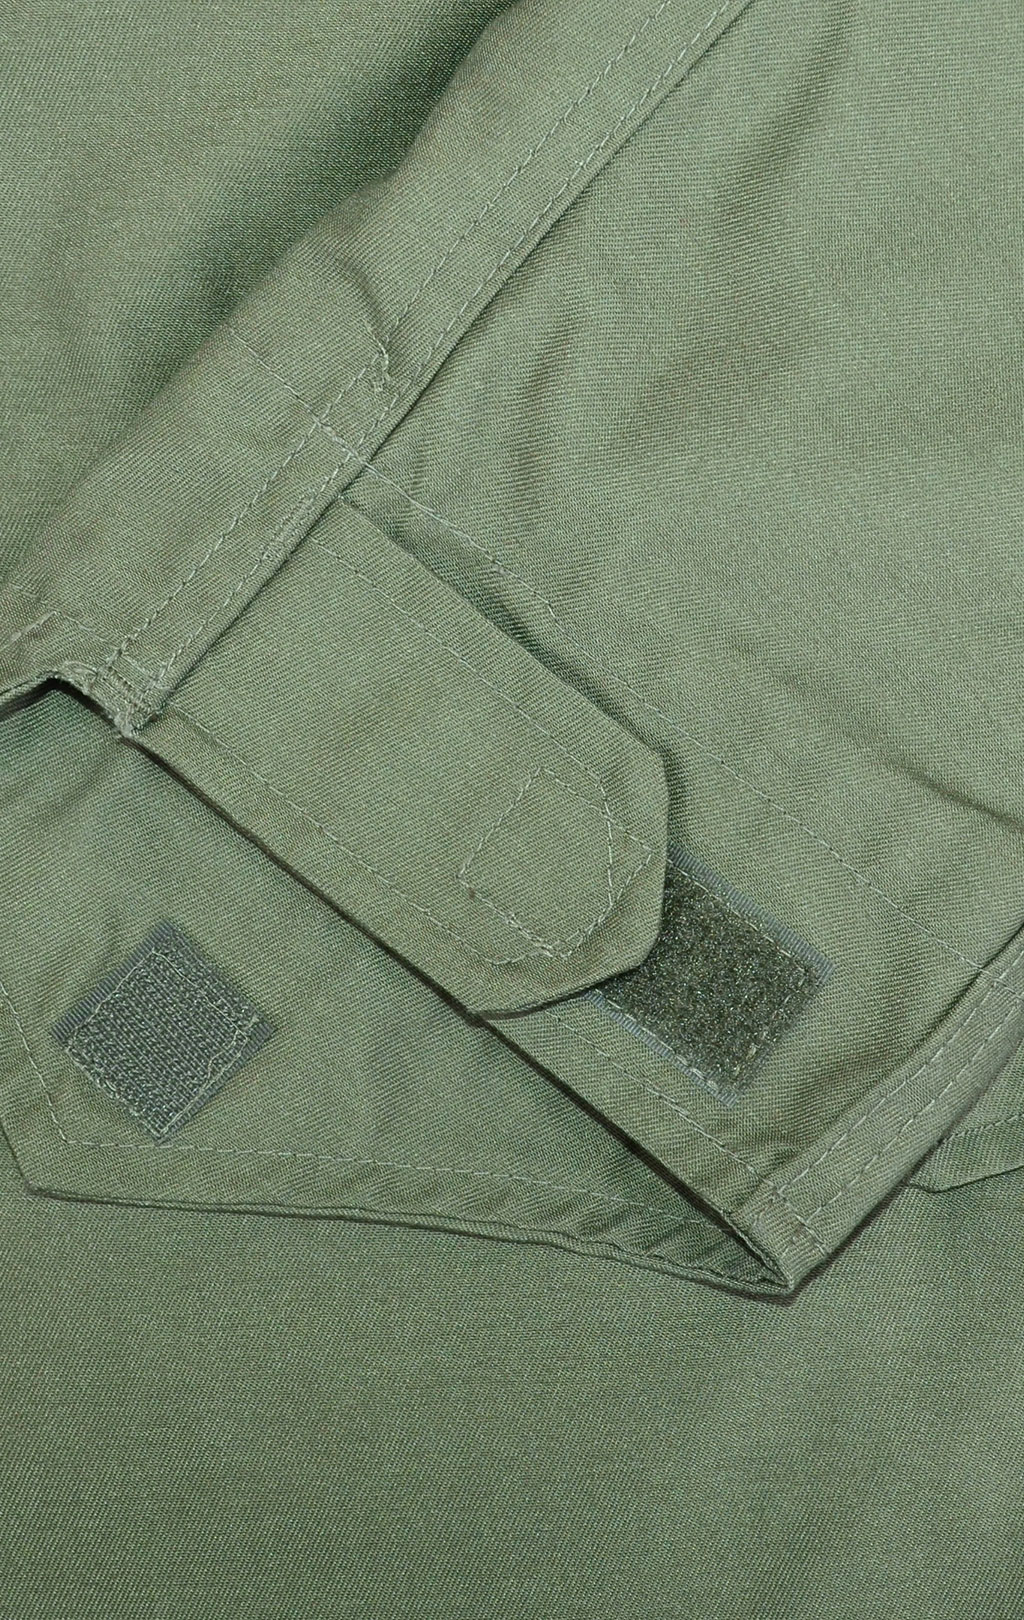 Куртка Surplus M-65 с подстёжкой olive 